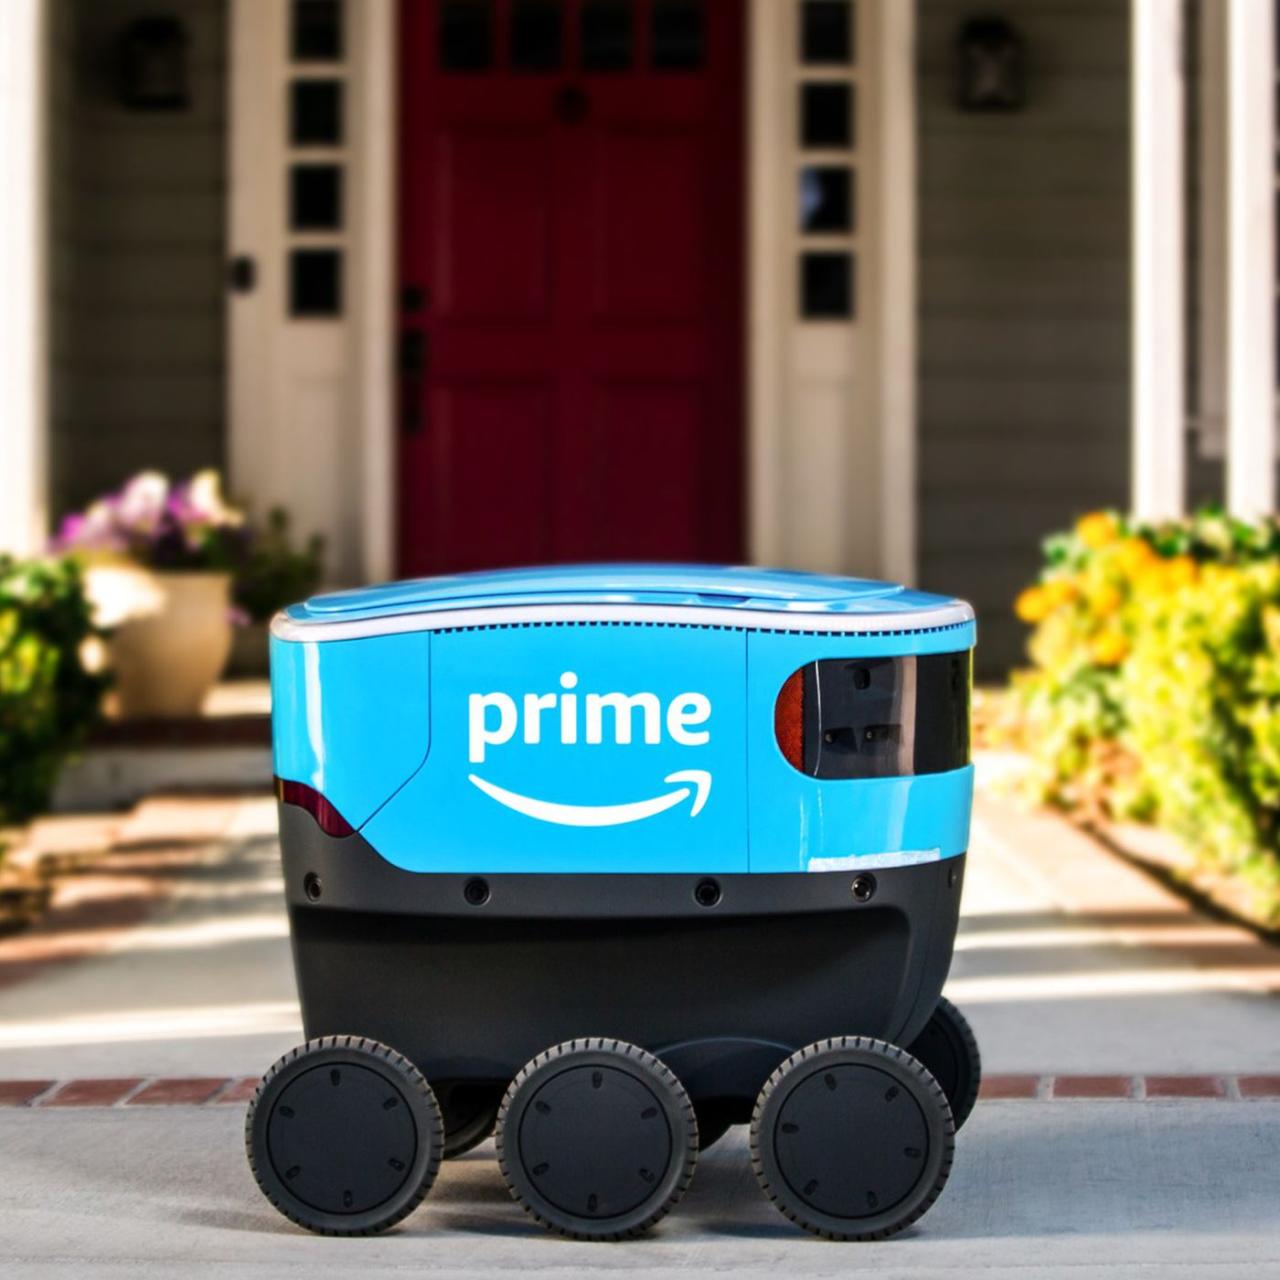 Voici comment Amazon forme ses robots de livraison Scout - The Verge